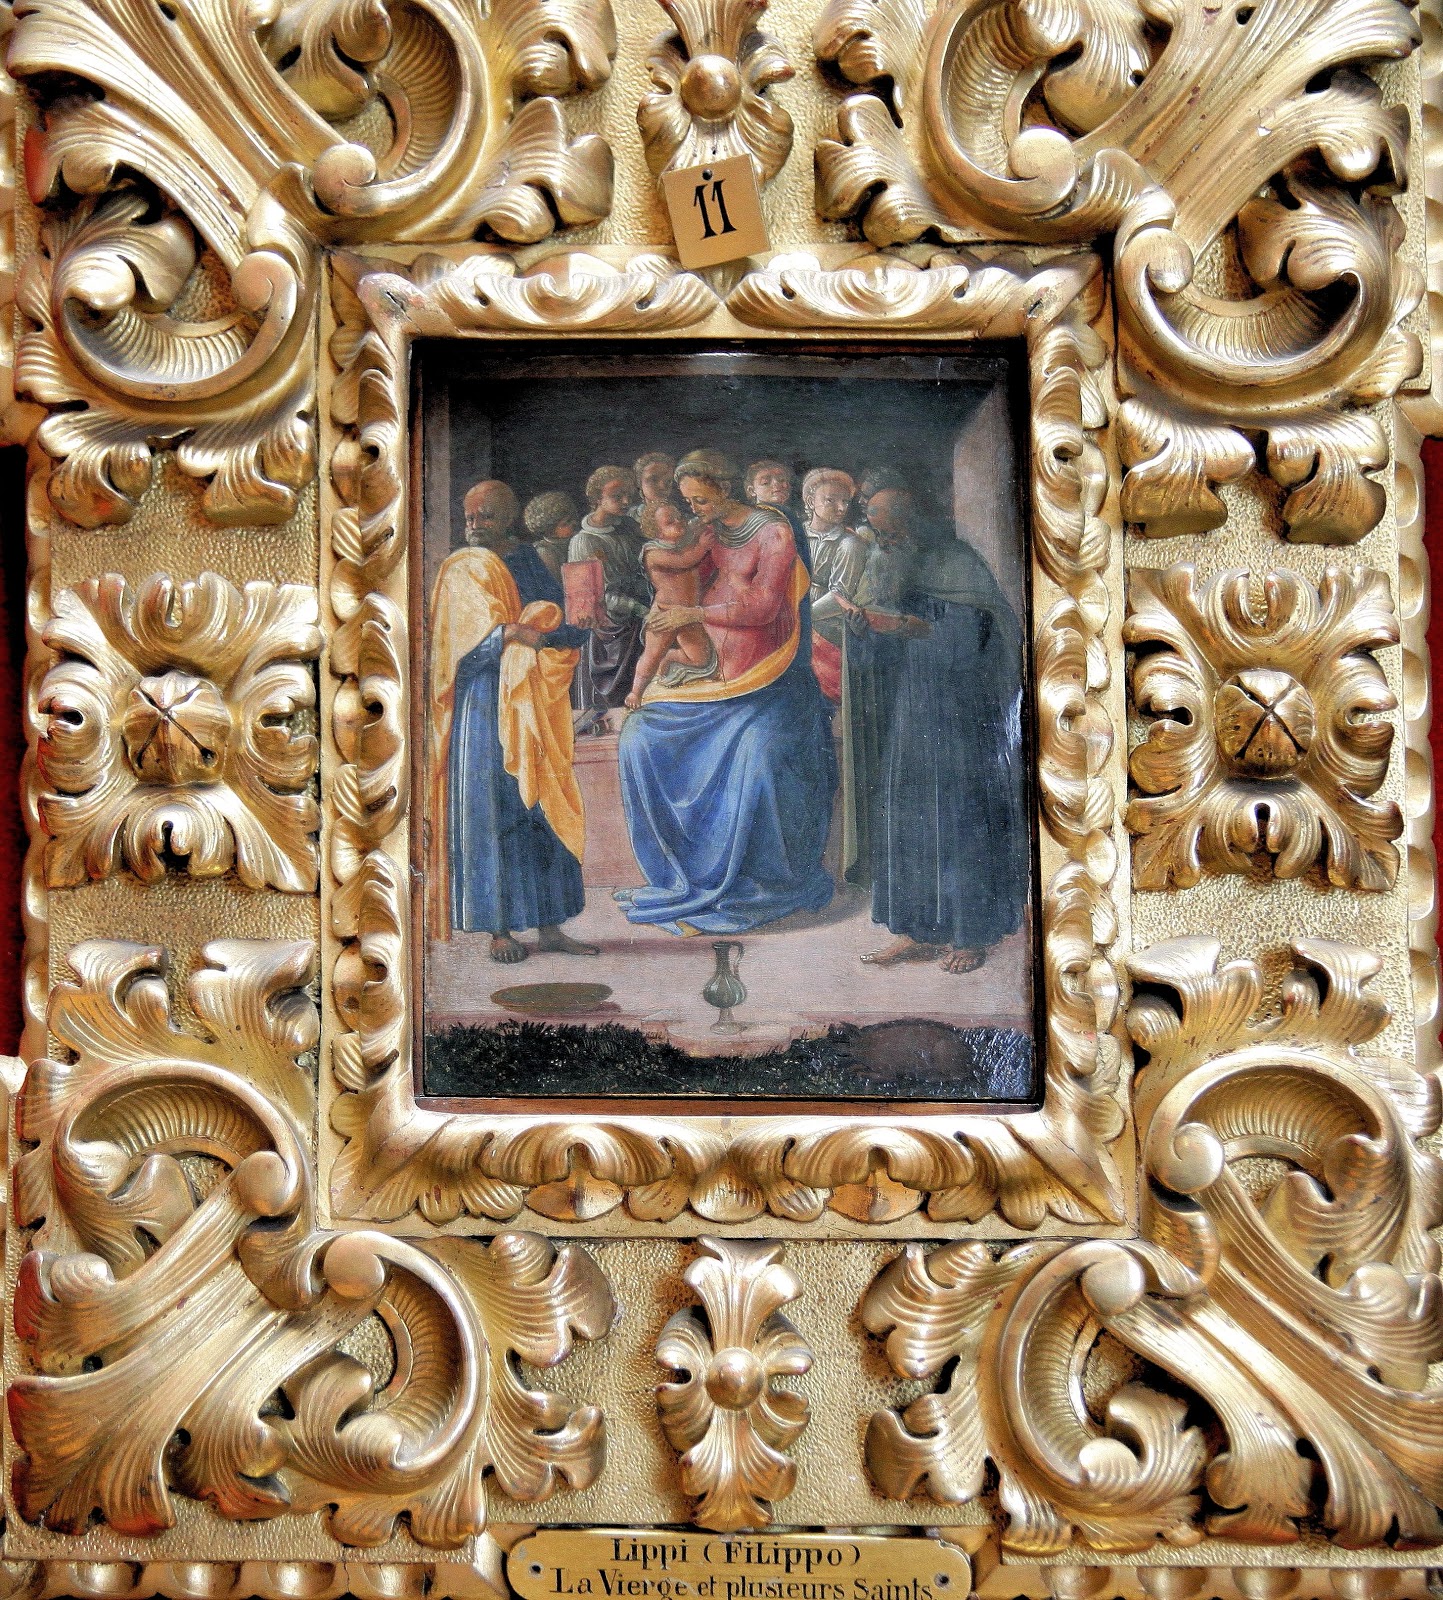 Filippino+Lippi-1457-1504 (127).jpg